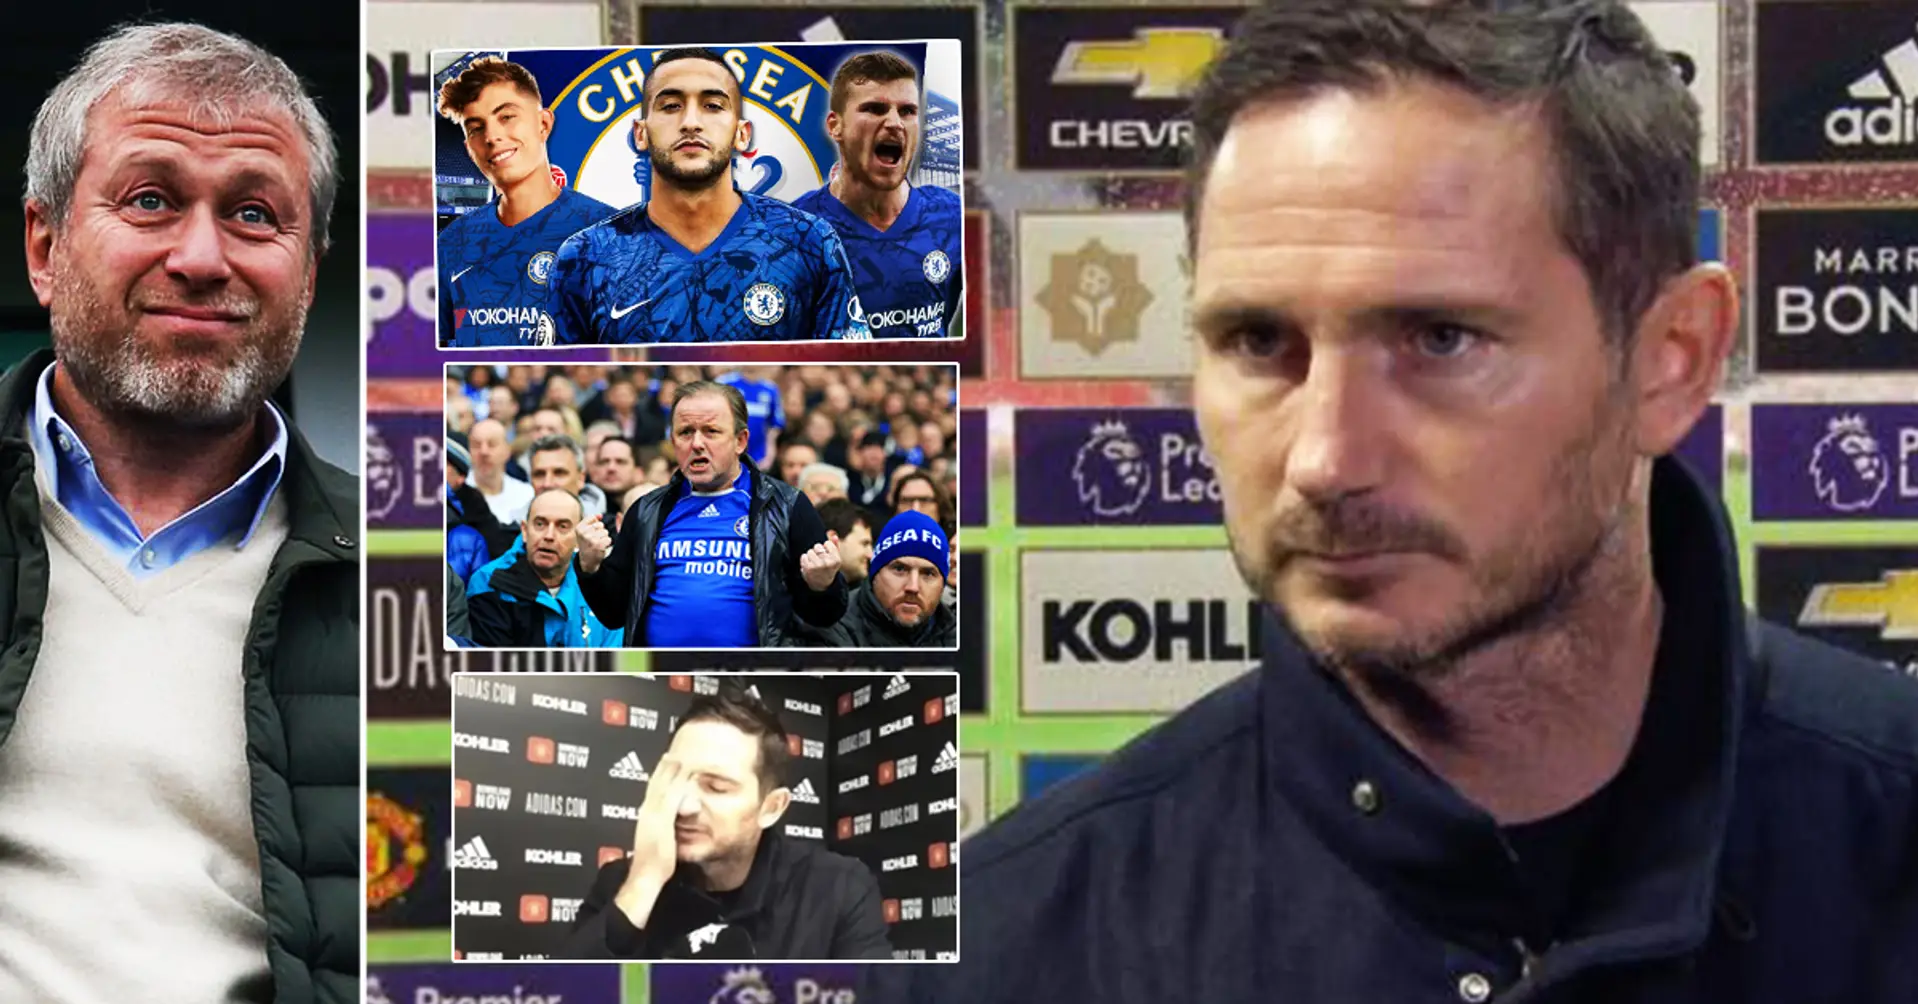 Schockierte Fans rund um die Welt reagieren auf die Chelsea-Entlassung von Frank Lampard